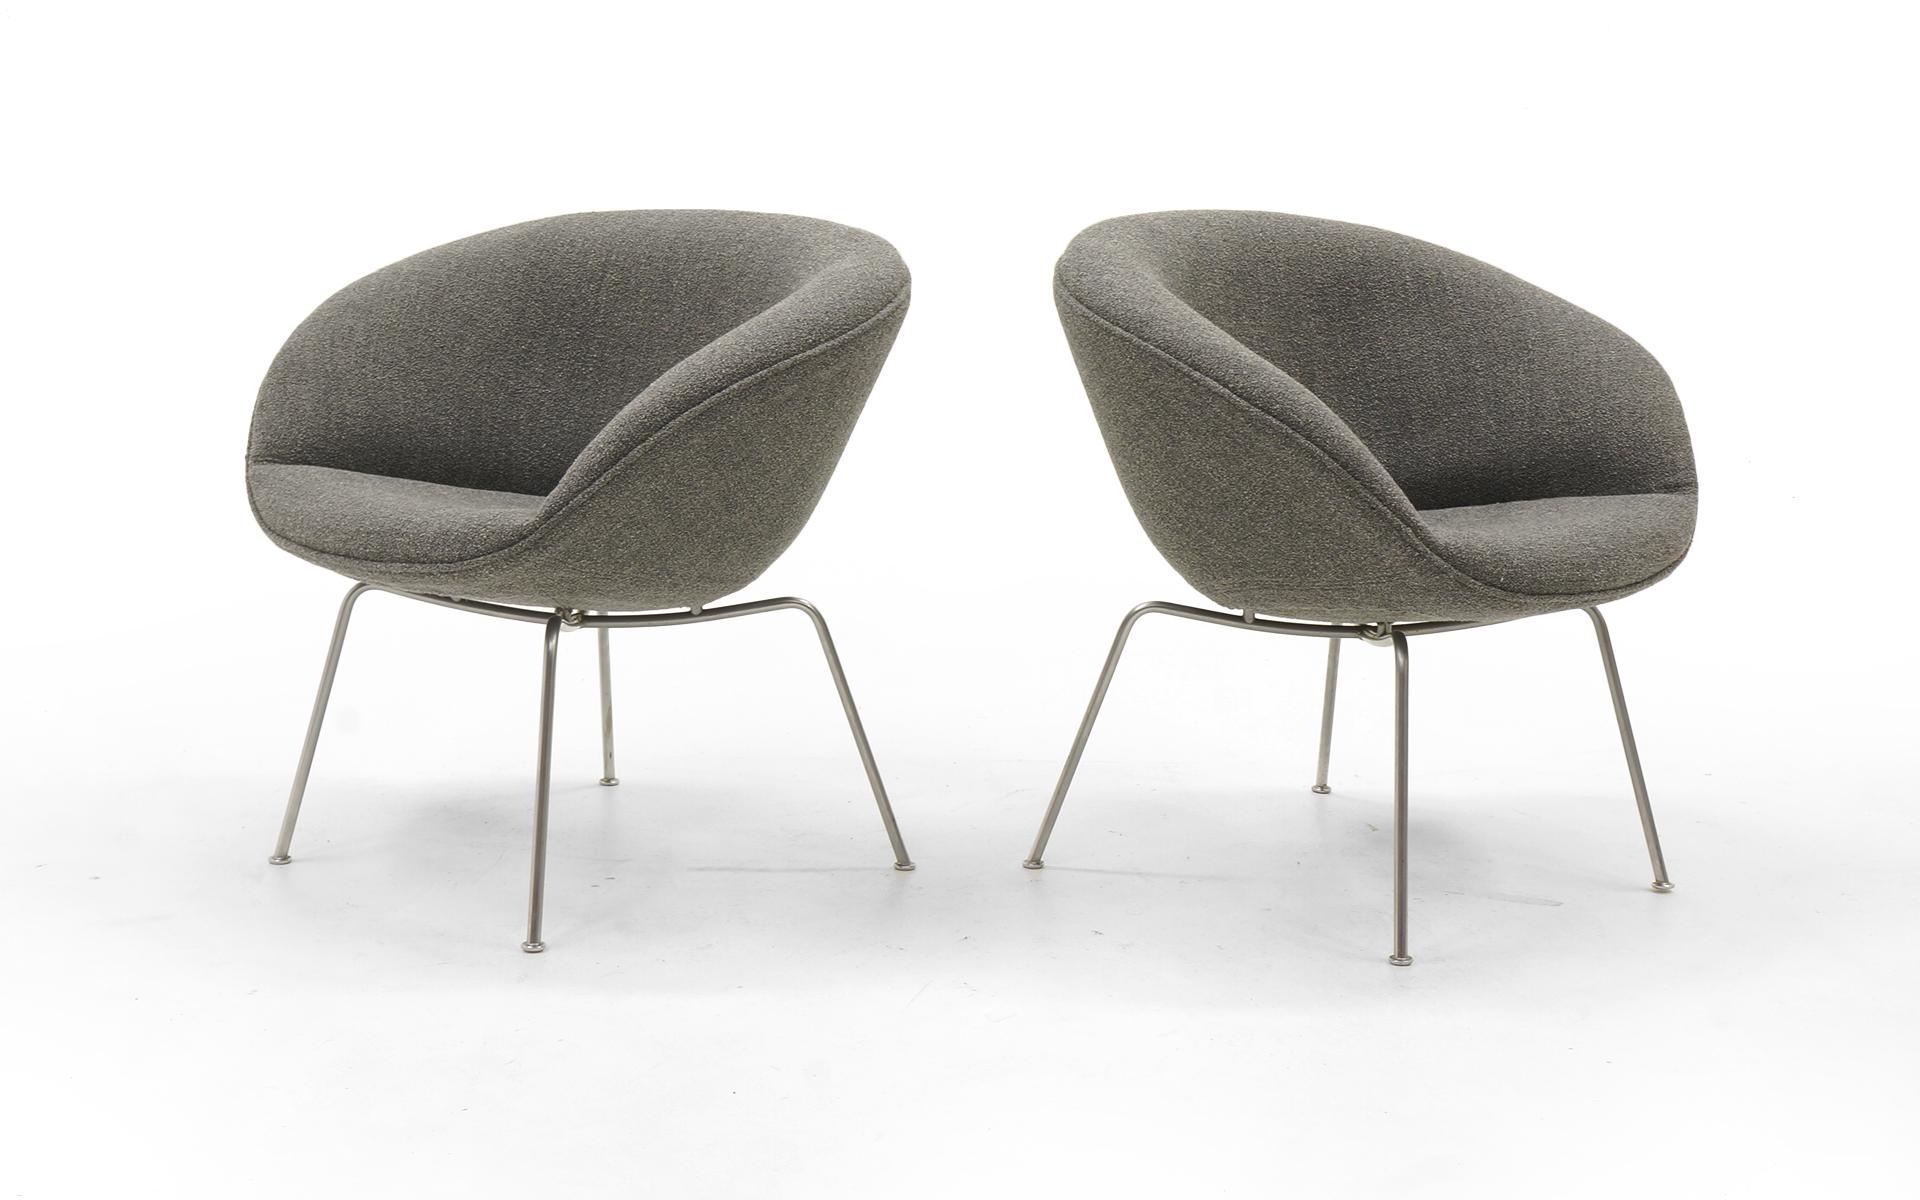 Scandinavian Modern Pair of Pot Chairs by Arne Jacobsen for Fritz Hansen, Restored, Maharam Fabric